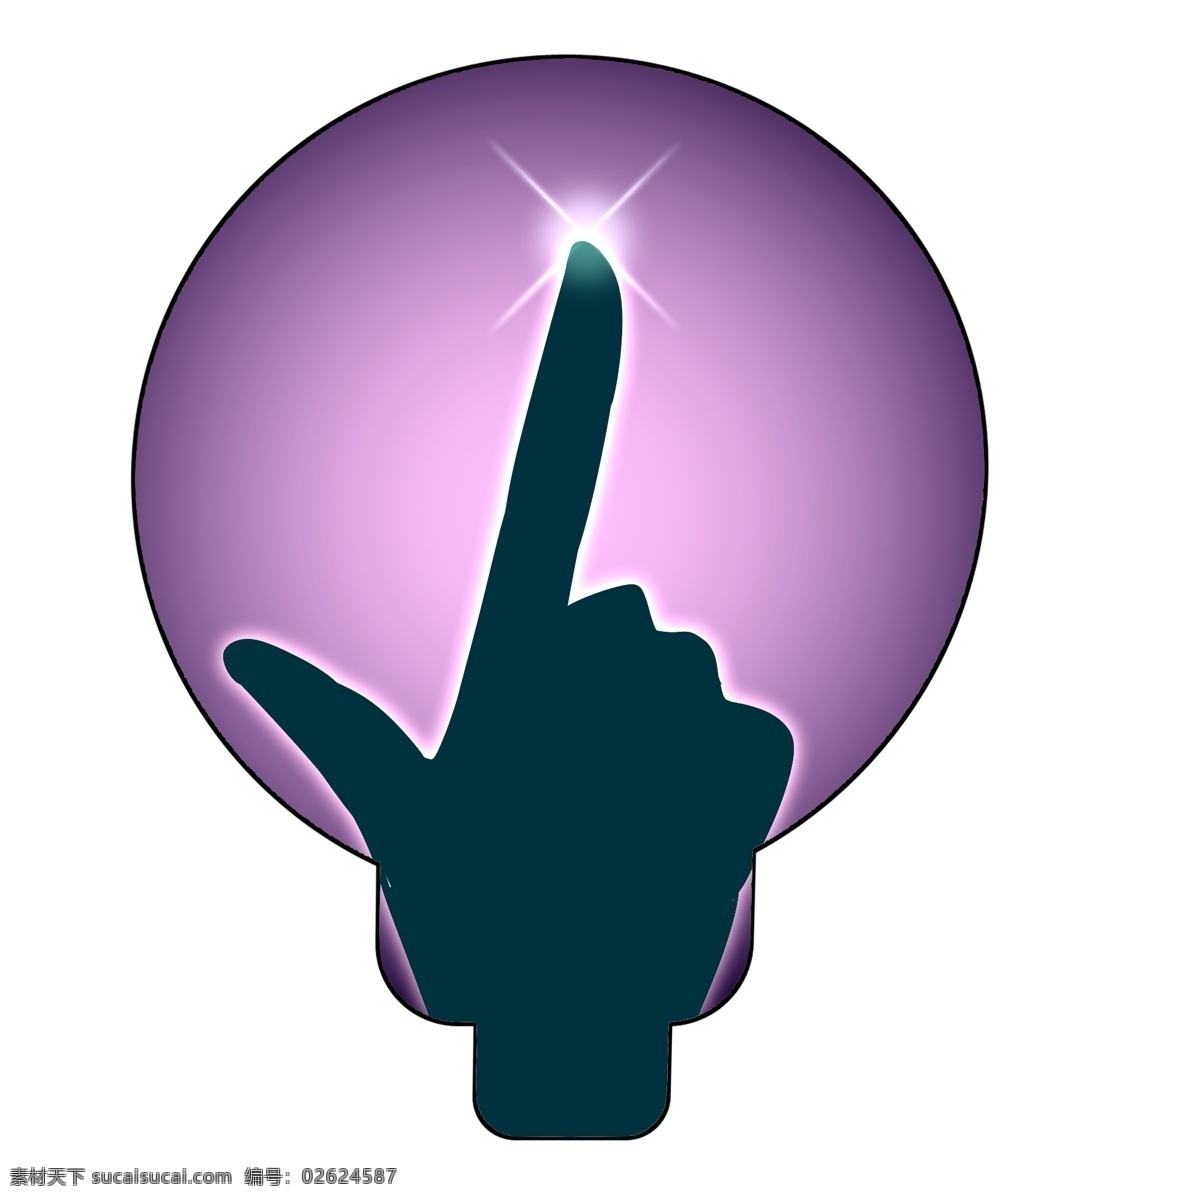 跳舞 手势 装饰 插画 跳舞的灯泡 漂亮的灯泡 紫色的灯泡 创意灯泡 立体灯泡 精美灯泡 手势灯泡